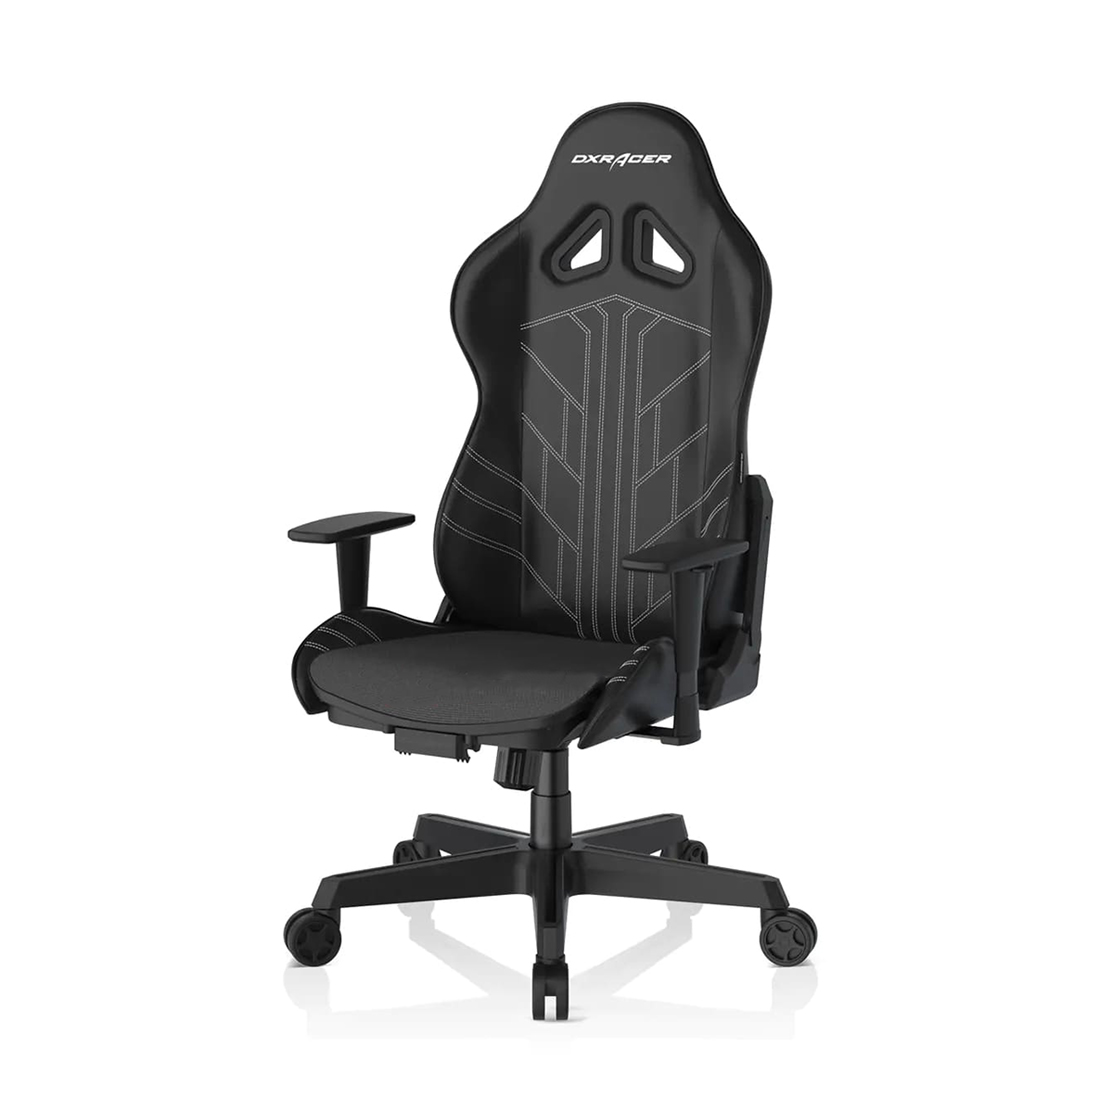 Игровое компьютерное кресло, DX Racer, GC/G003/N-D2-01, Рекомендуемый рост: до 190 см, Рекомендуемый